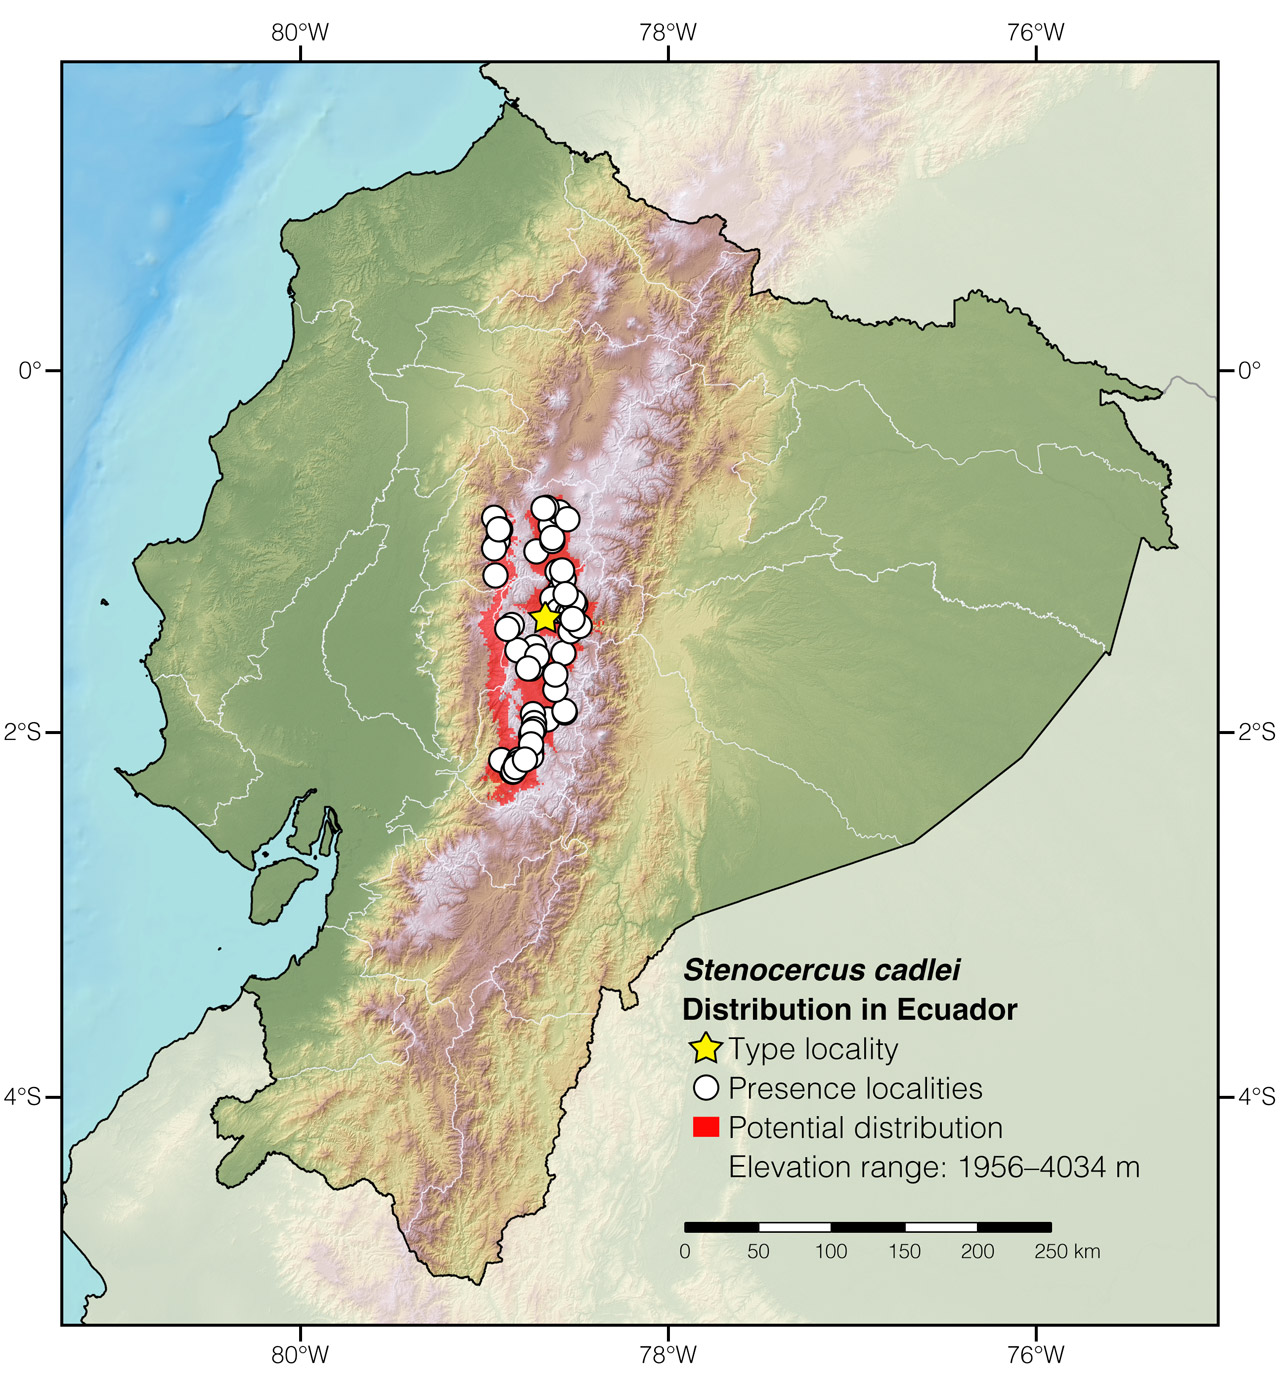 Distribution of Stenocercus cadlei in Ecuador